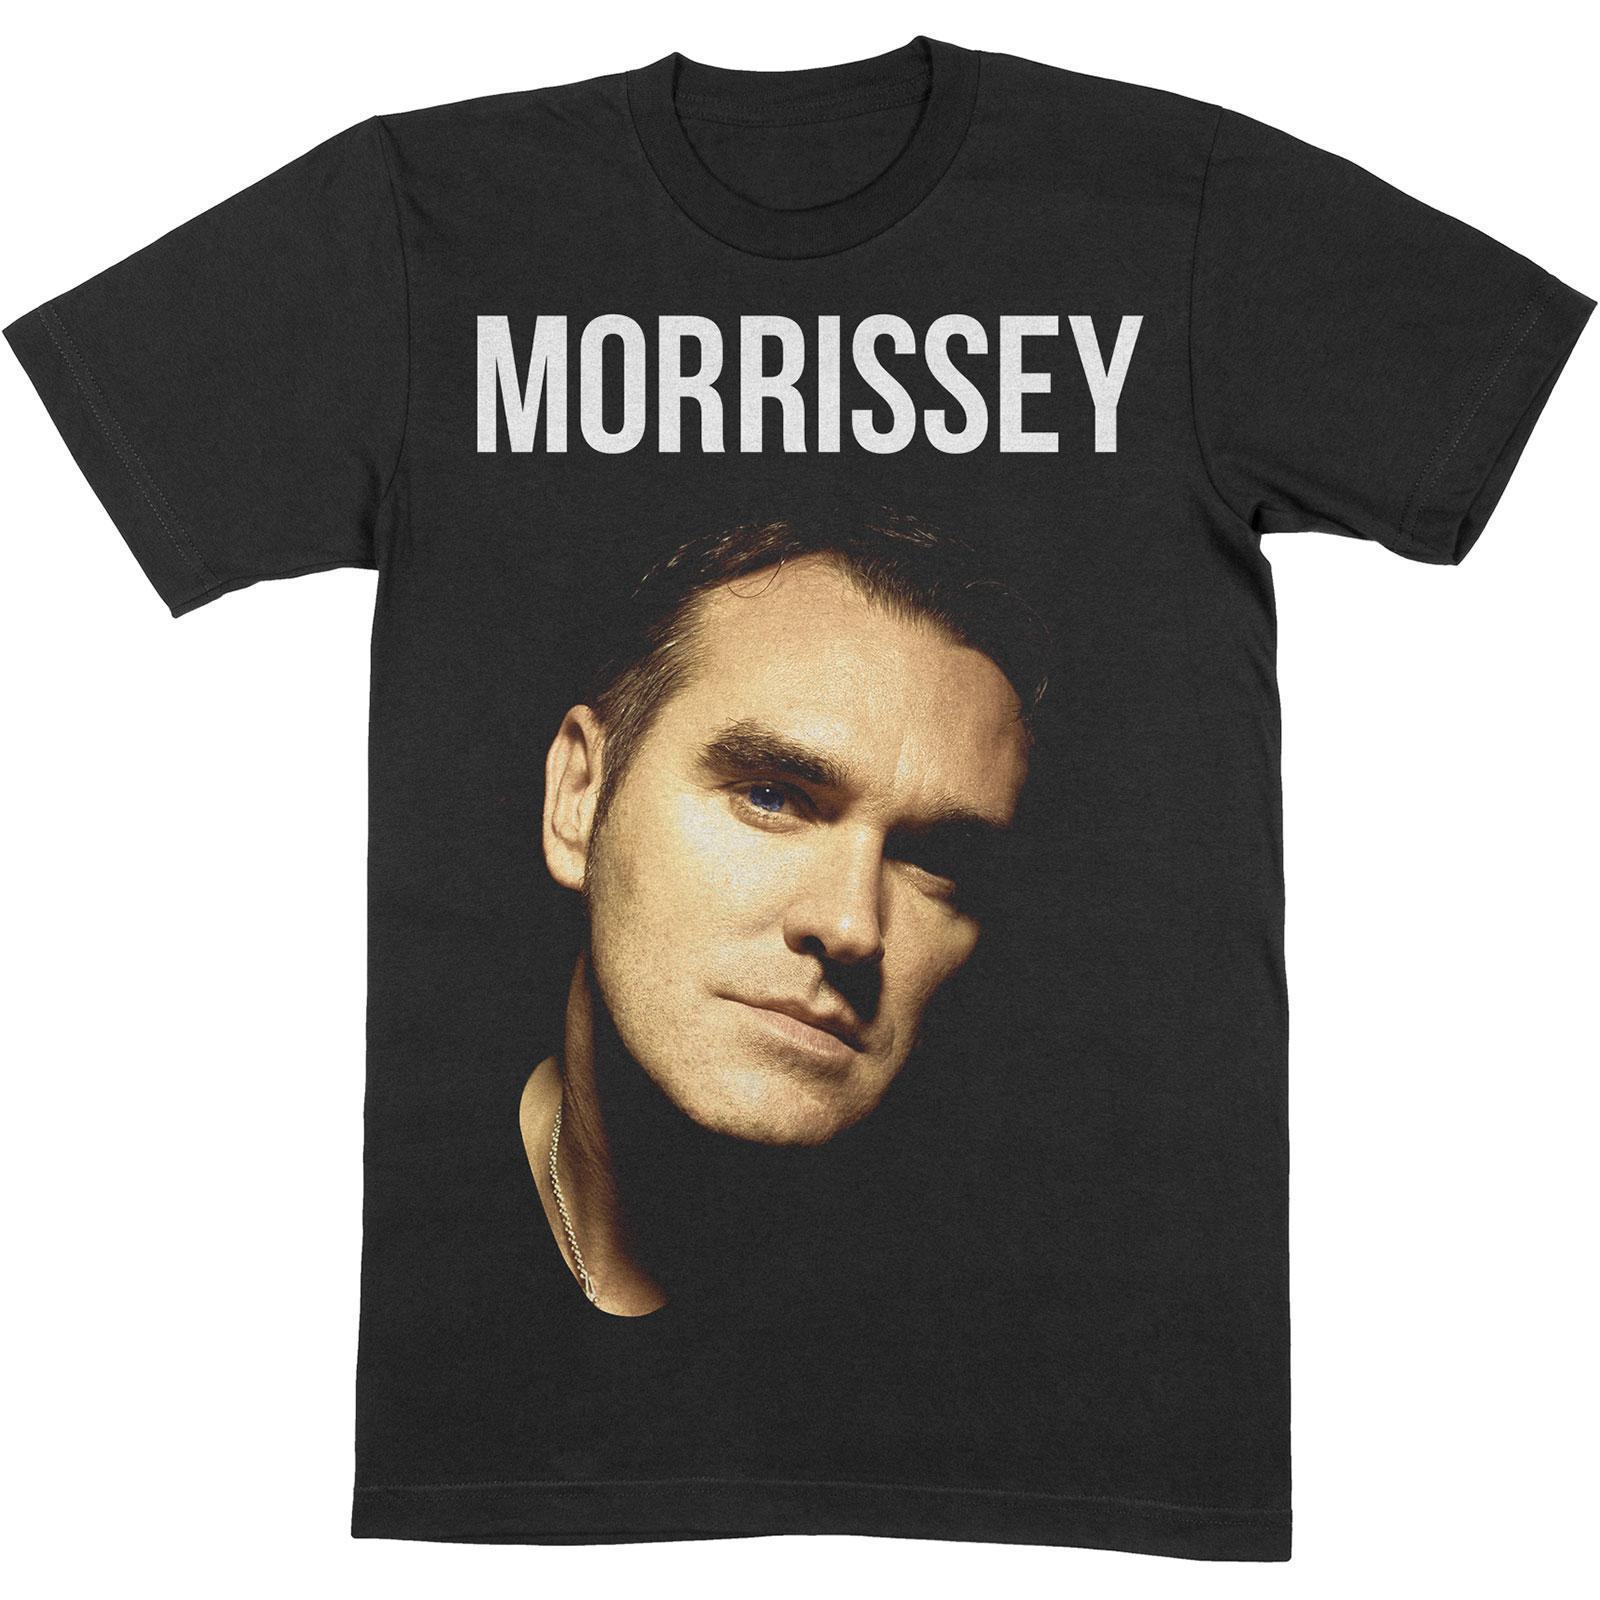 Morrissey Unisex Adult Photograph Cotton T-Shirt (Black) (L)